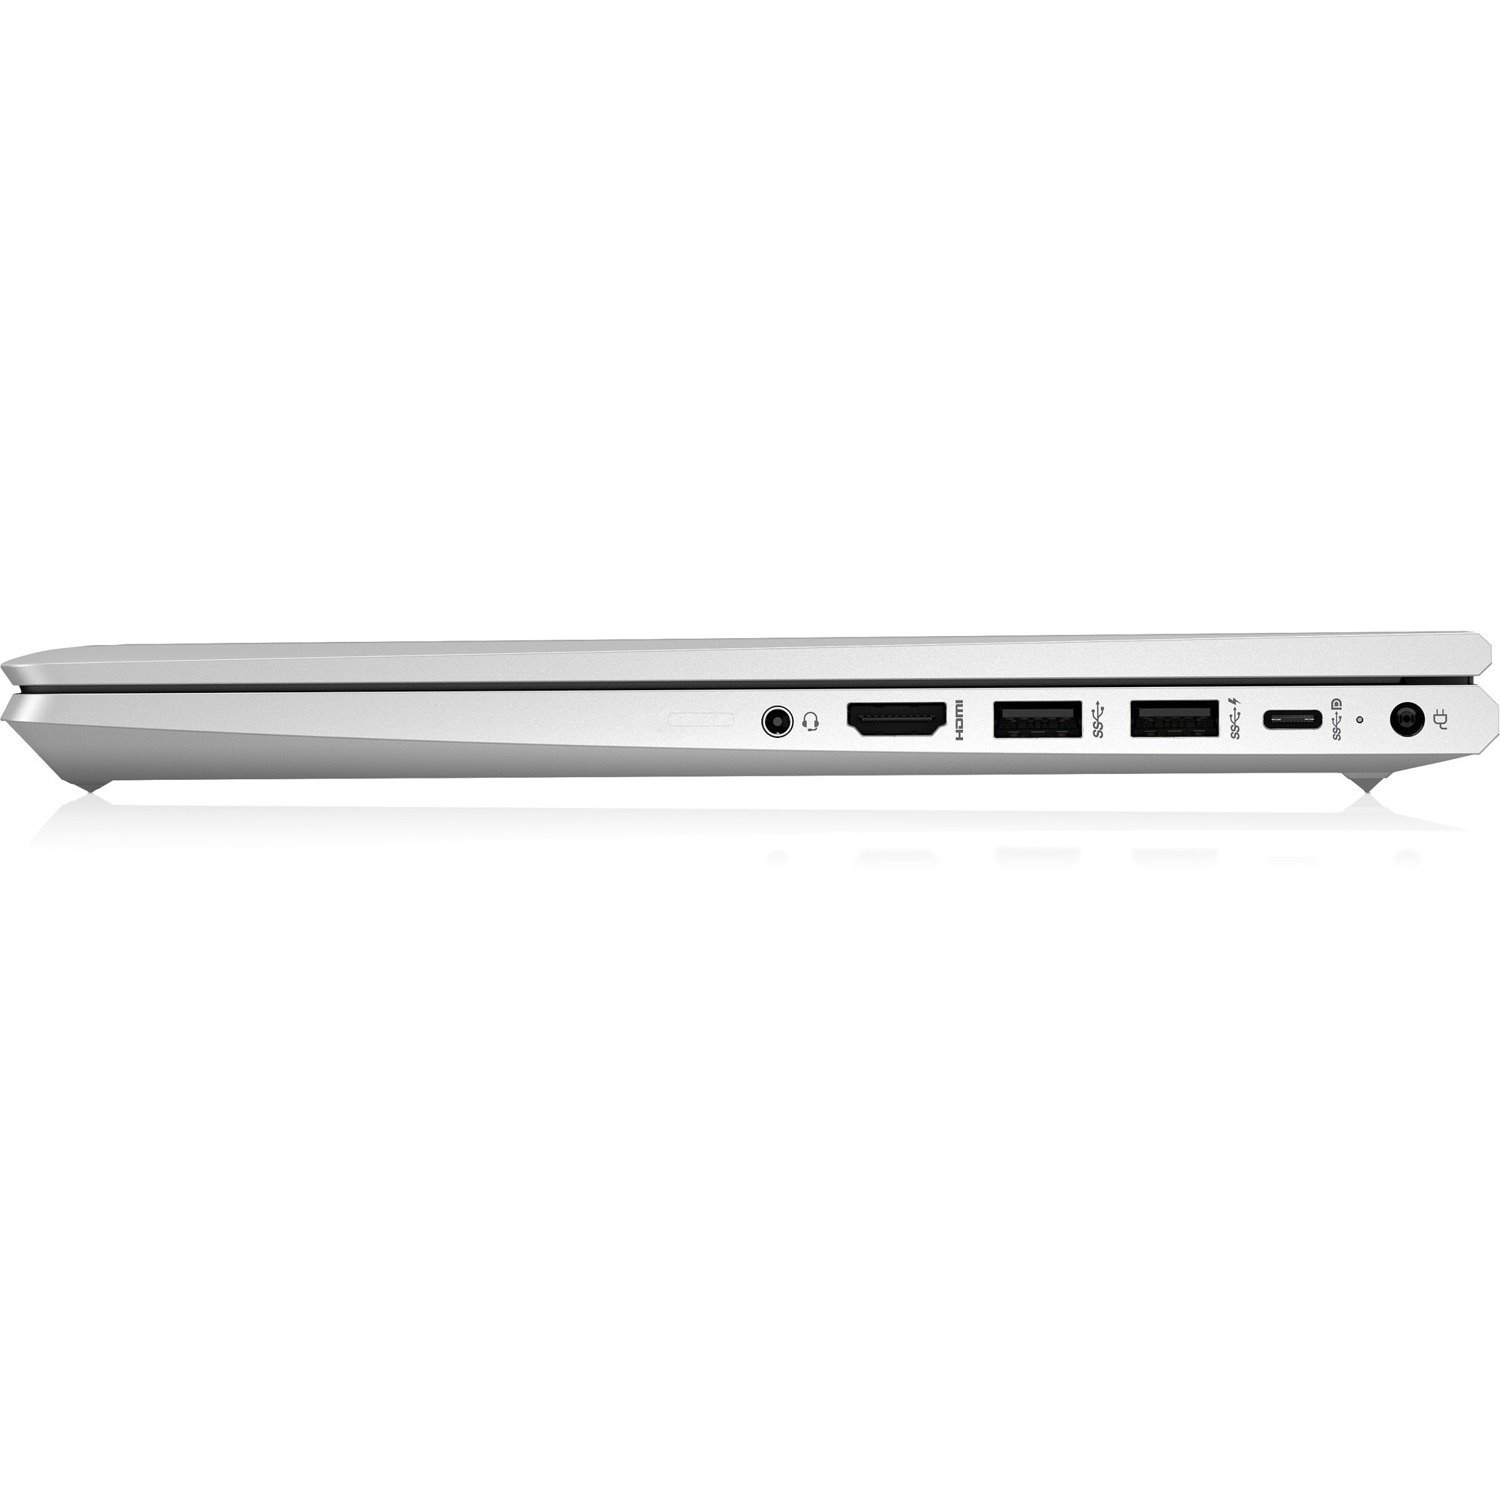 HP ProBook 440 G9 35.6 cm (14") Notebook - HD - 1366 x 768 - Intel Core i7 12th Gen i7-1255U Deca-core (10 Core) 1.70 GHz - 8 GB Total RAM - 256 GB SSD